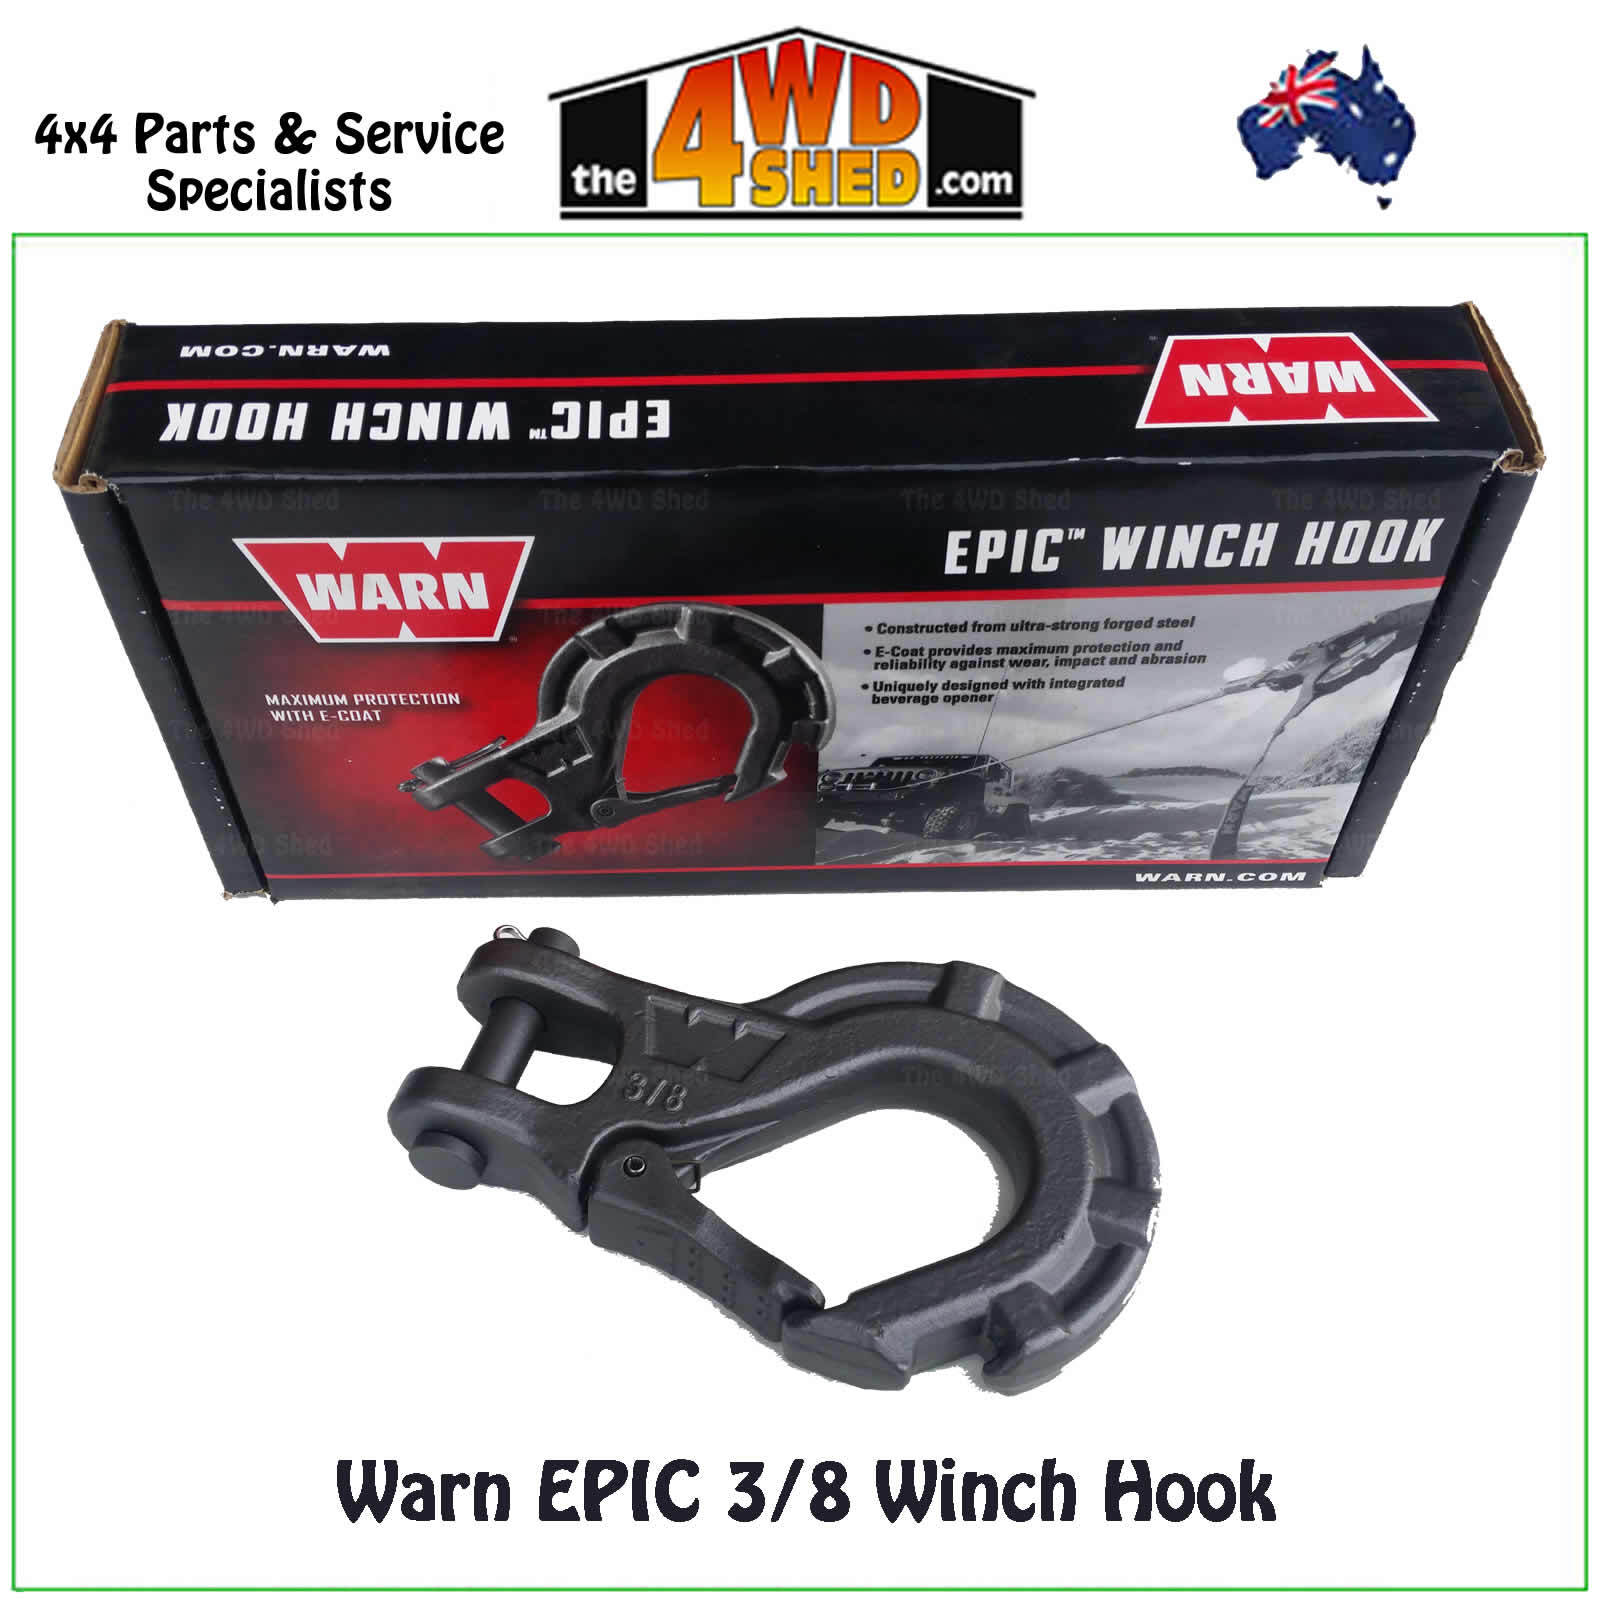 Warn Epic 3/8 Winch Hook